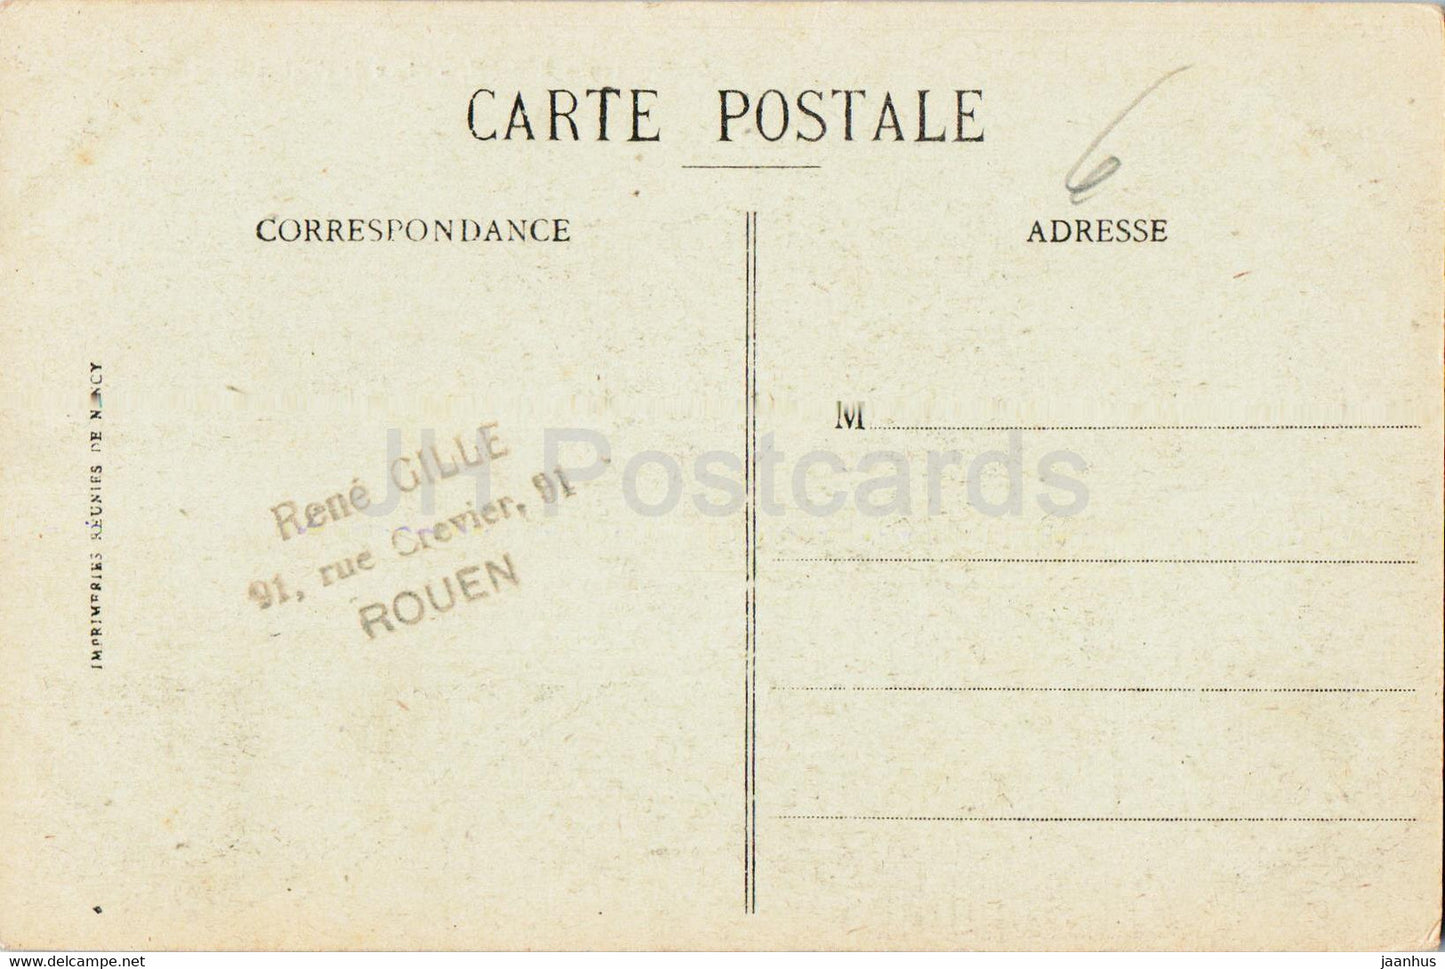 Rouen - Place de l'Eglise Saint Sever - church - 339 - old postcard - 1918 - France - used